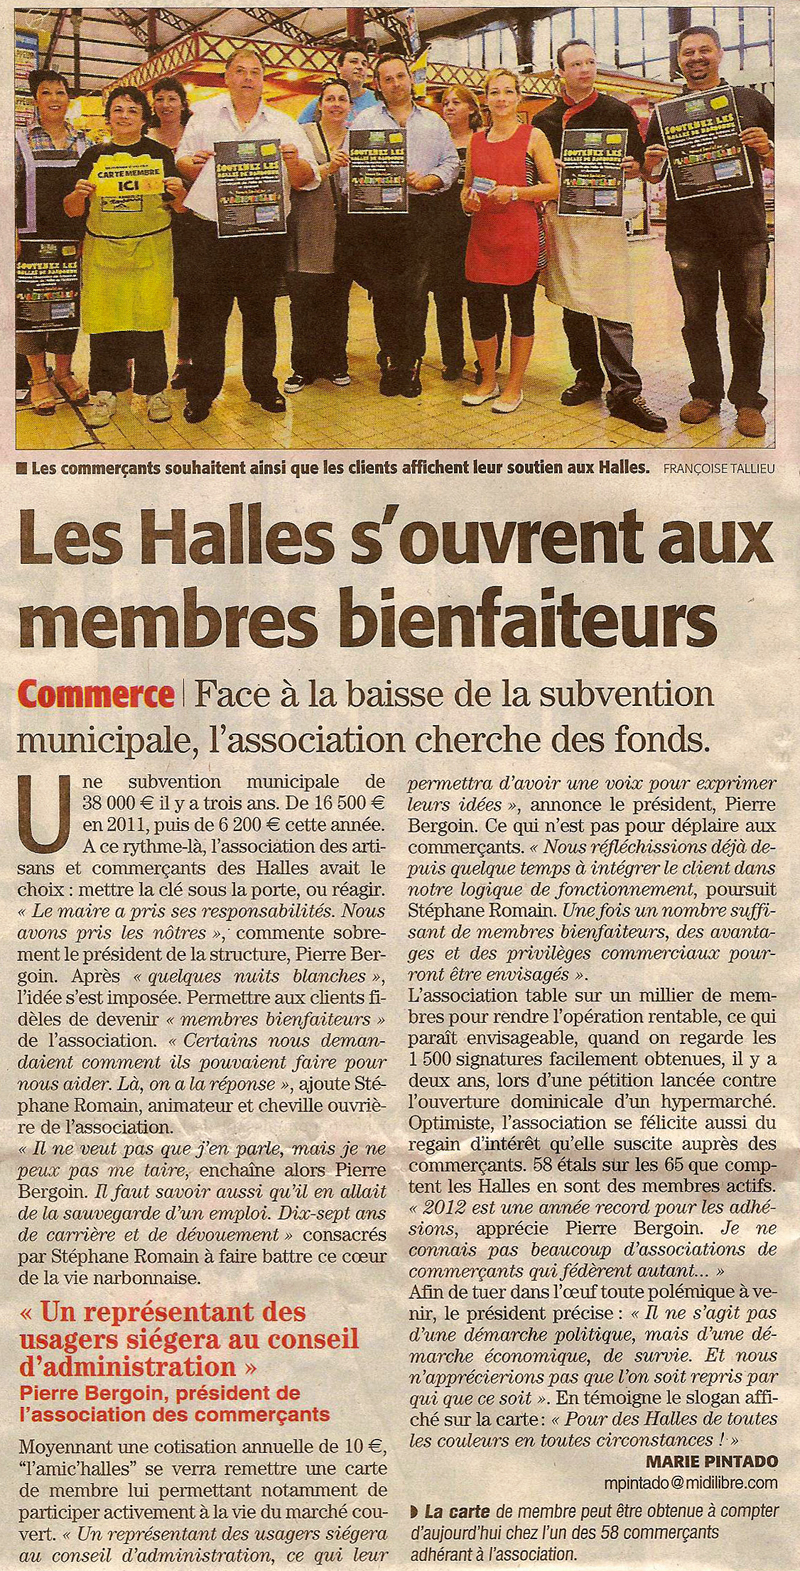 Halles_narbonne_soutien_membres_bienfaiteurs_midilibre_26-05-12